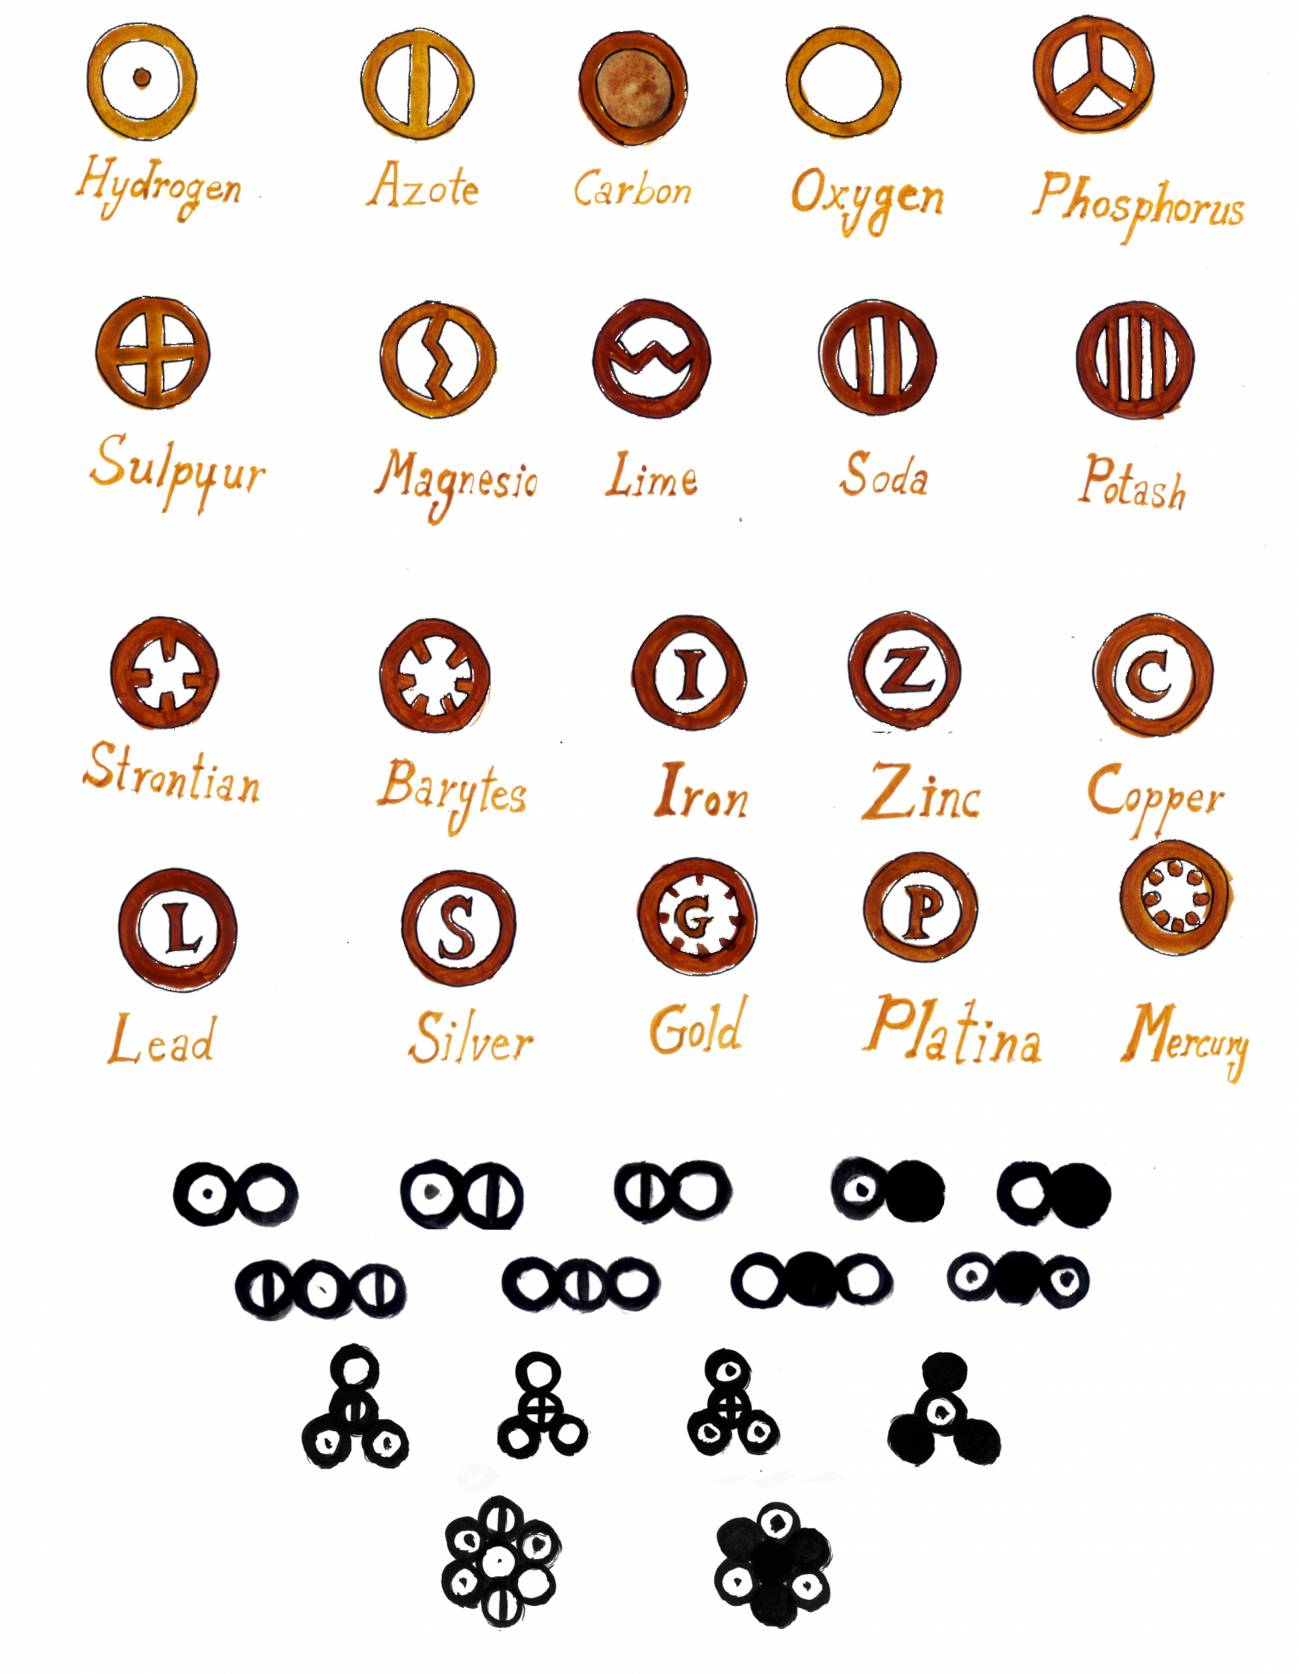 3 de septiembre de 1803: John Dalton comienza a usar símbolos para representar los átomos de los elementos